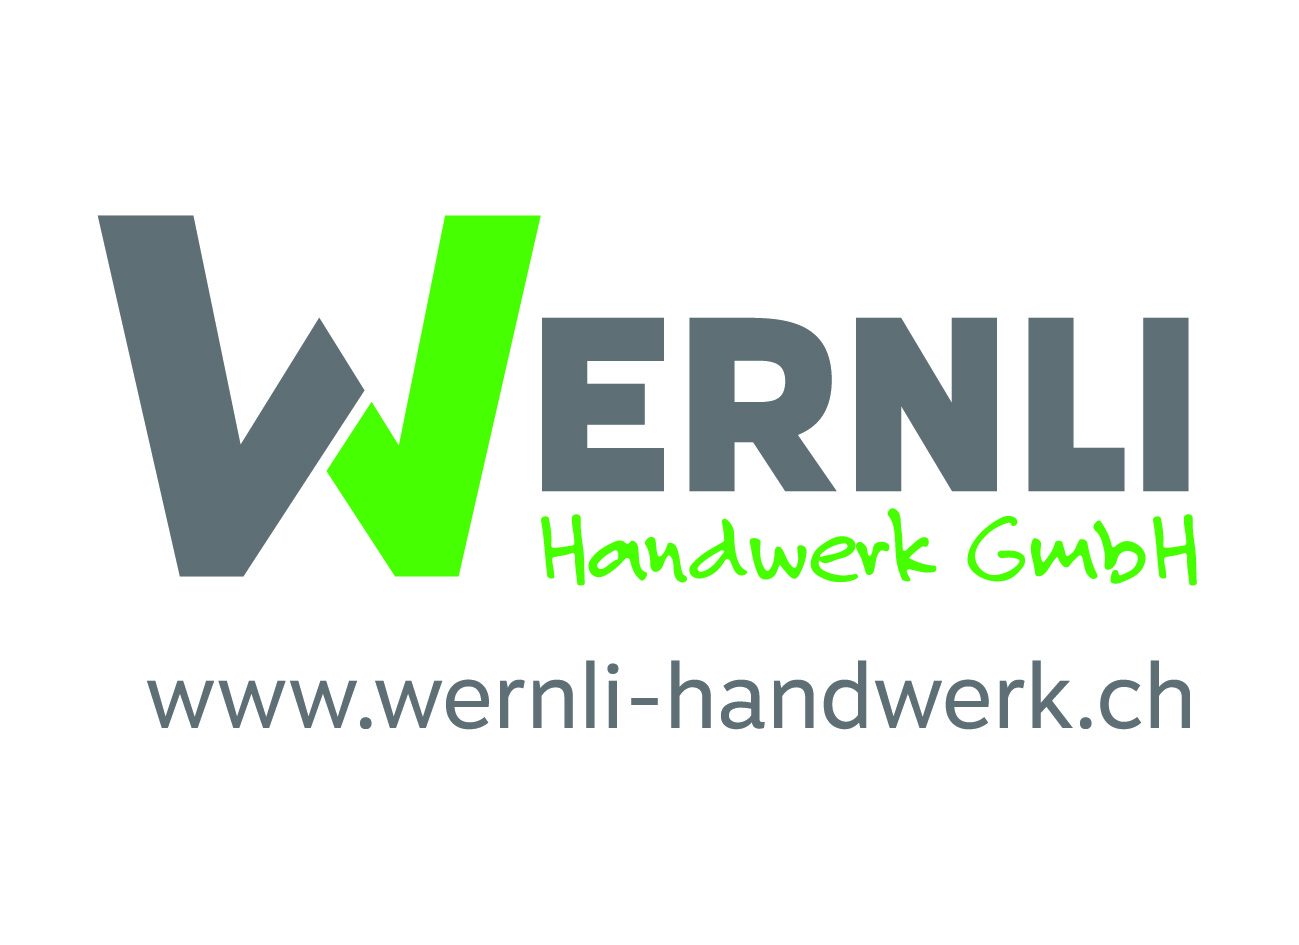 Wernli Handwerk GmbH